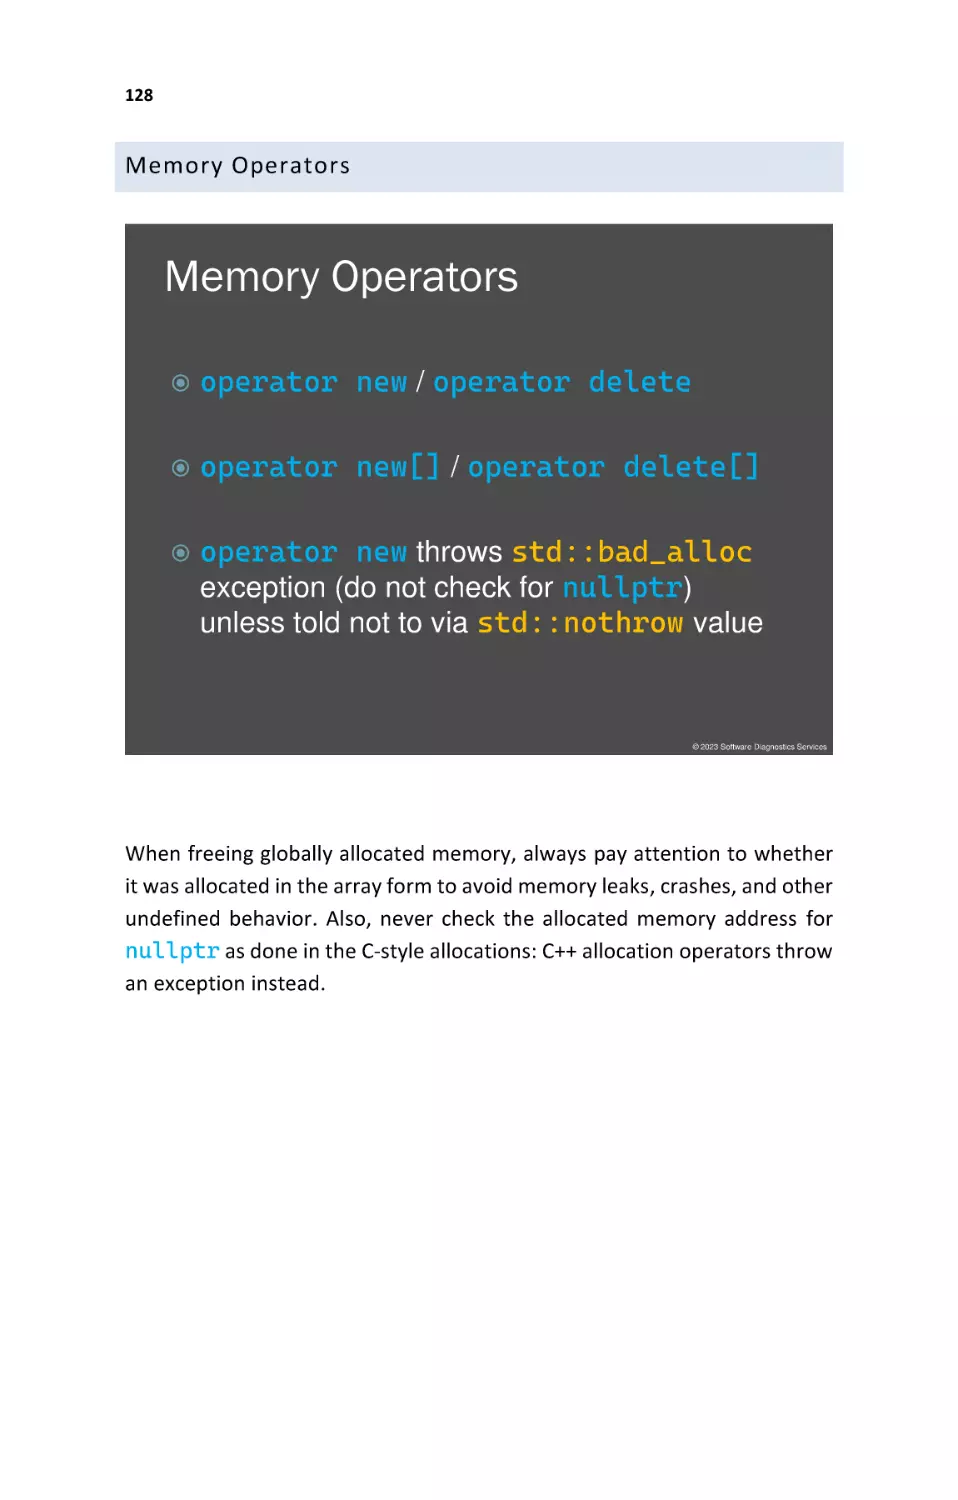 Memory Operators